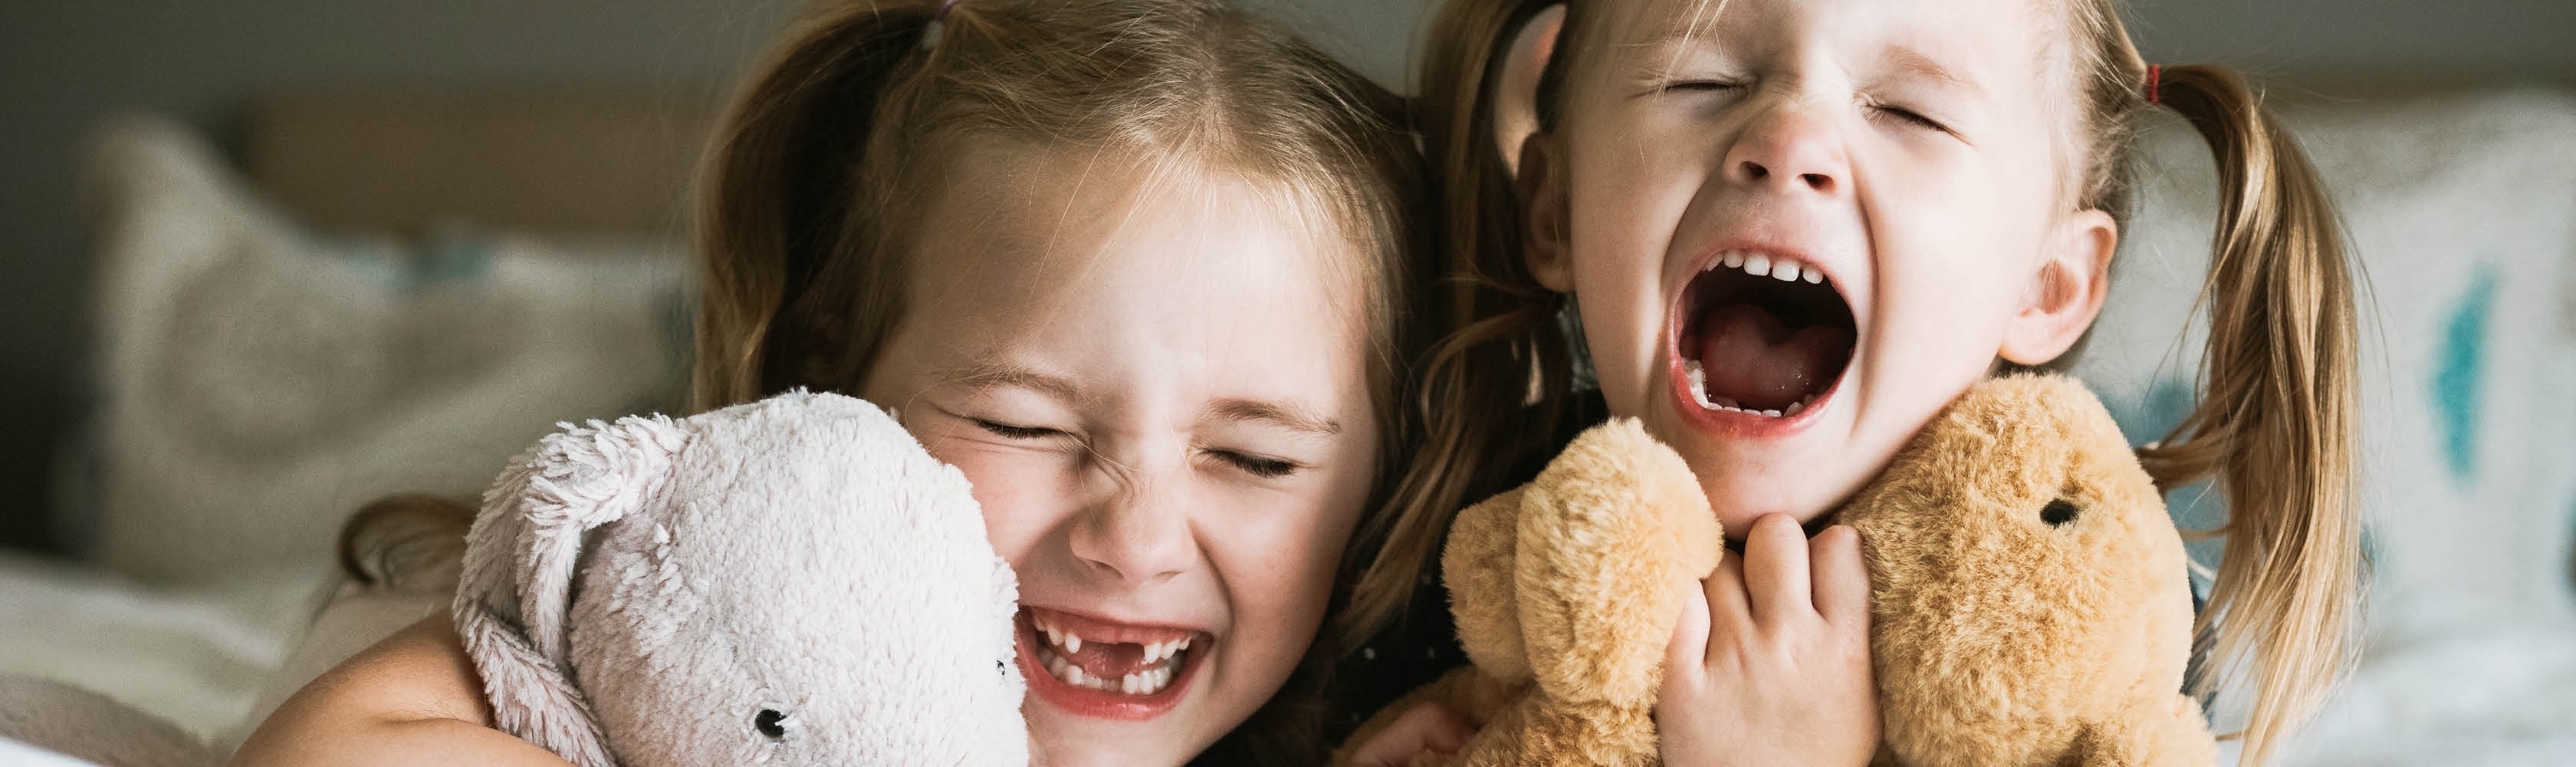 Due ragazze ridono. Vale la pena concludere un’Assicurazione cure dentarie, segnatamente per i bambini.